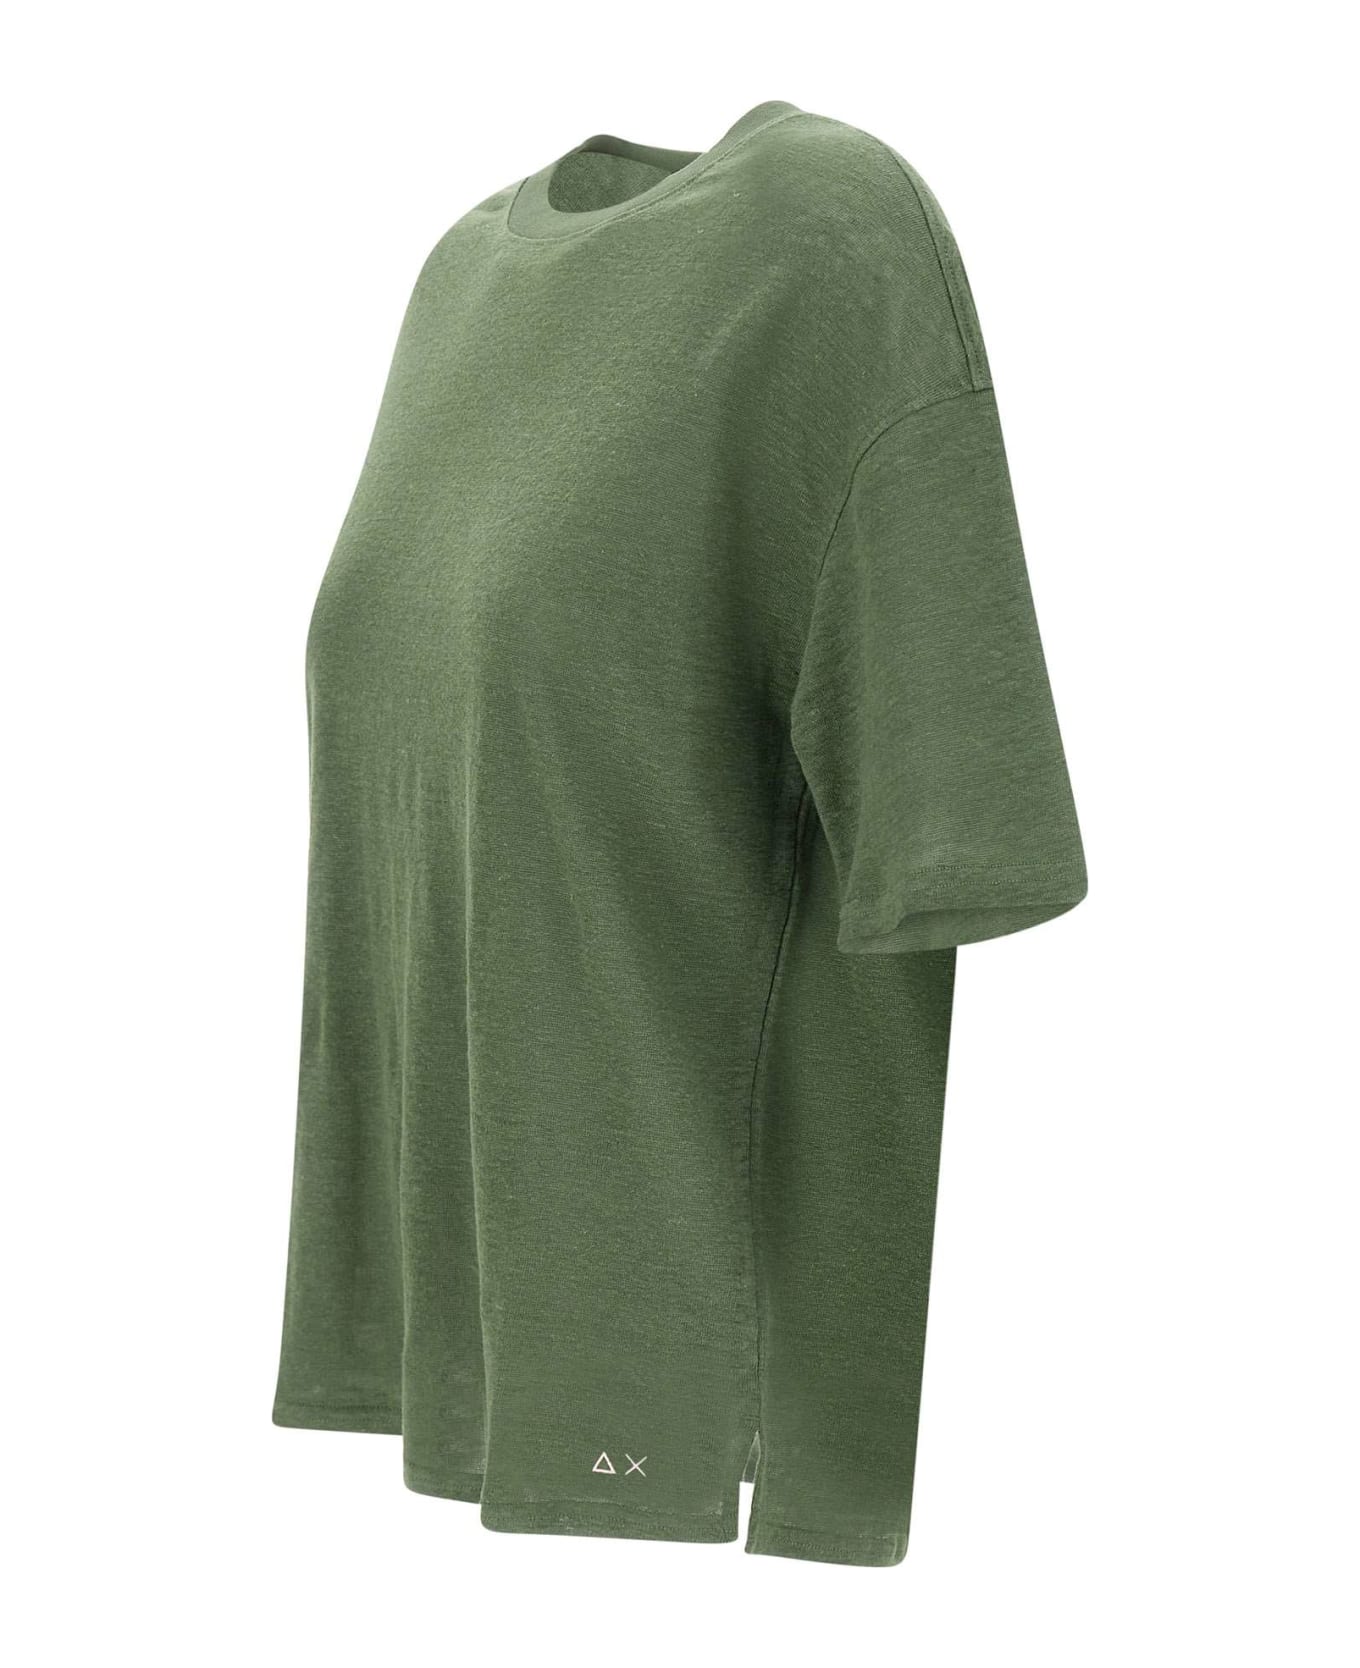 Sun 68 "round Neck" Linen T-shirt - GREEN